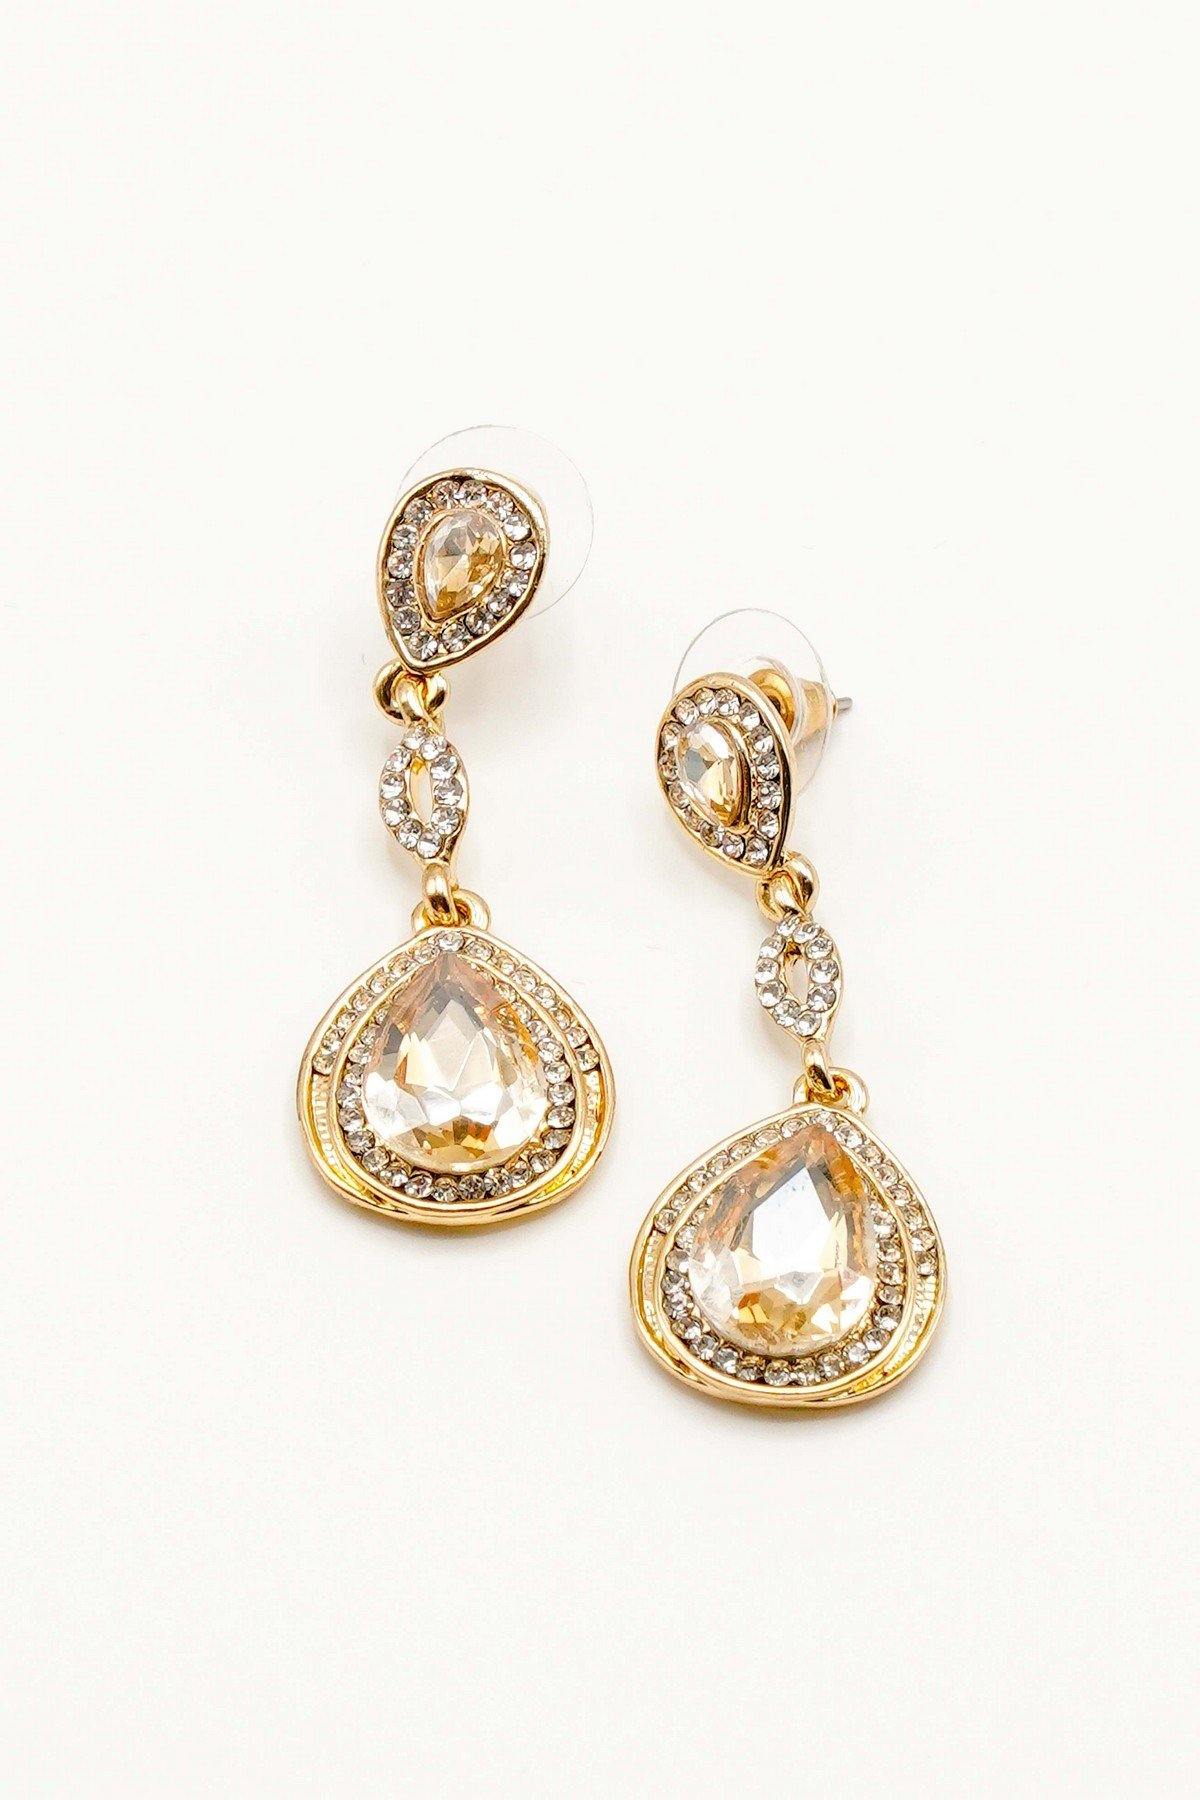 Dangle Clear Diamante Teardrop Rhinestone Earrings - The Dress Outlet